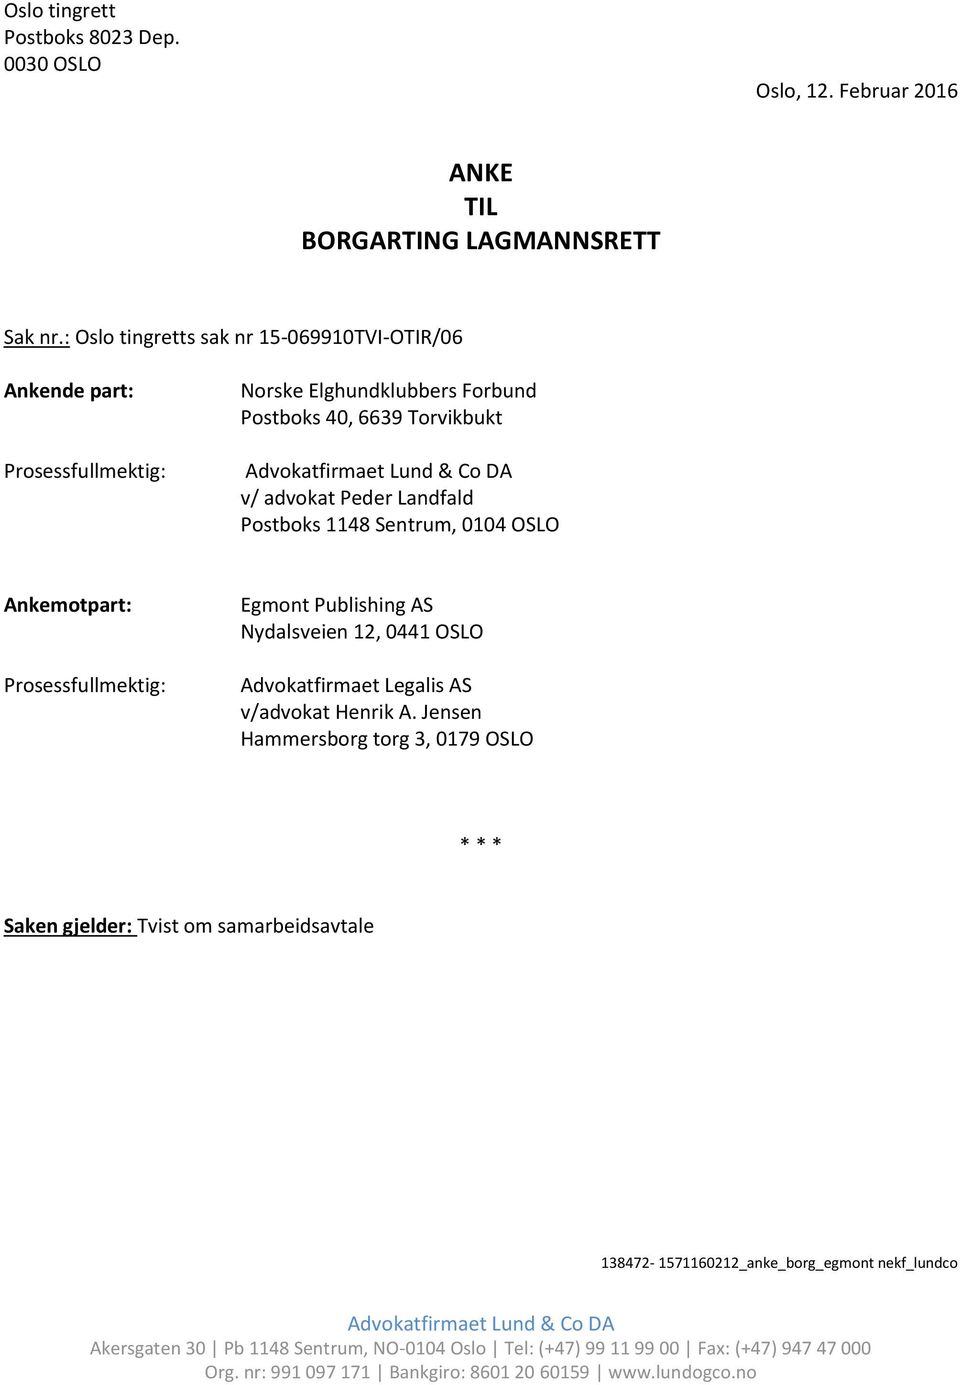 ANKE TIL BORGARTING LAGMANNSRETT - PDF Free Download